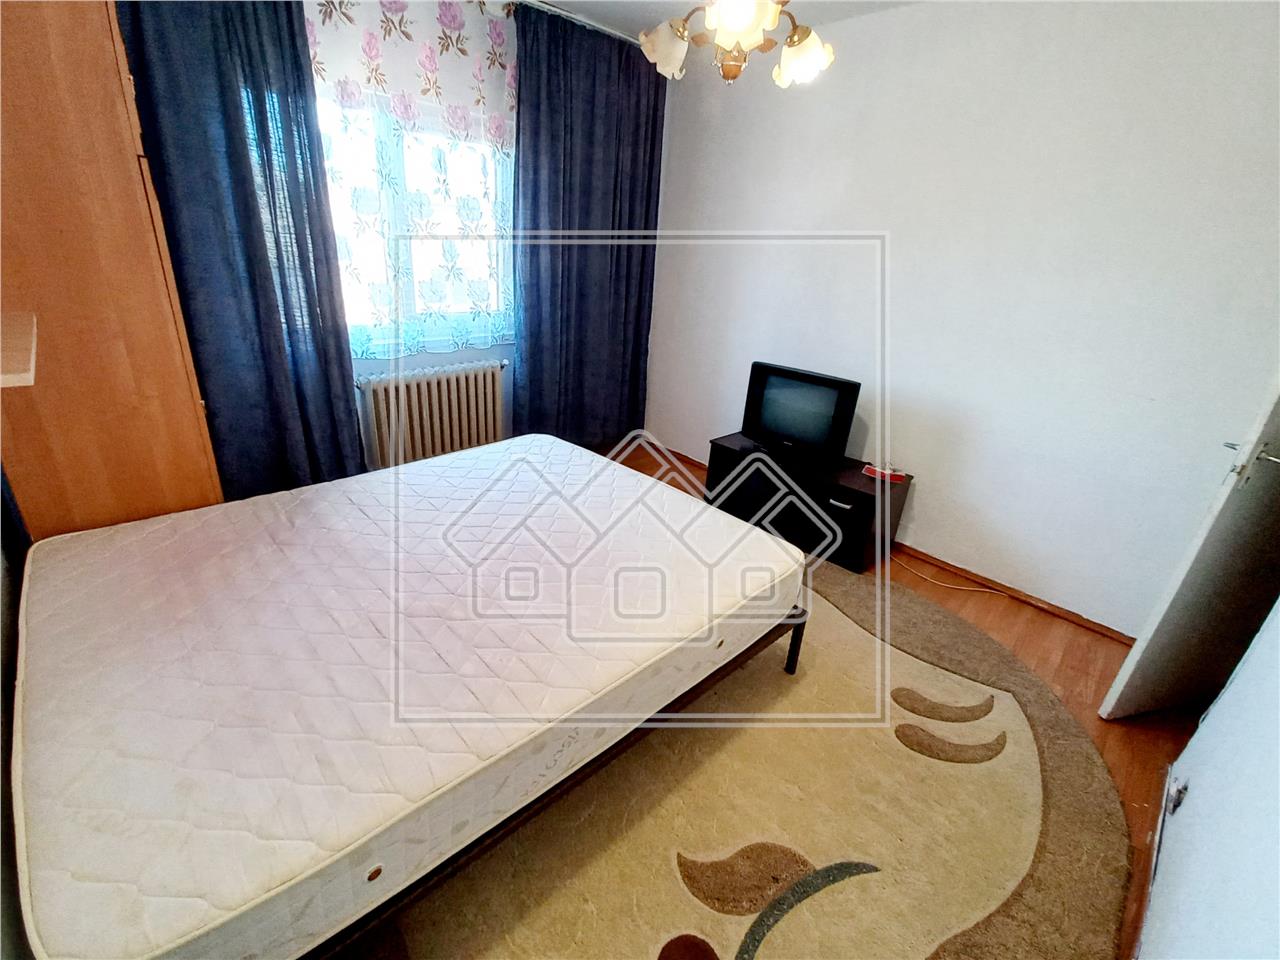 Apartament de inchriat in Alba Iulia - 2 camere si balcon